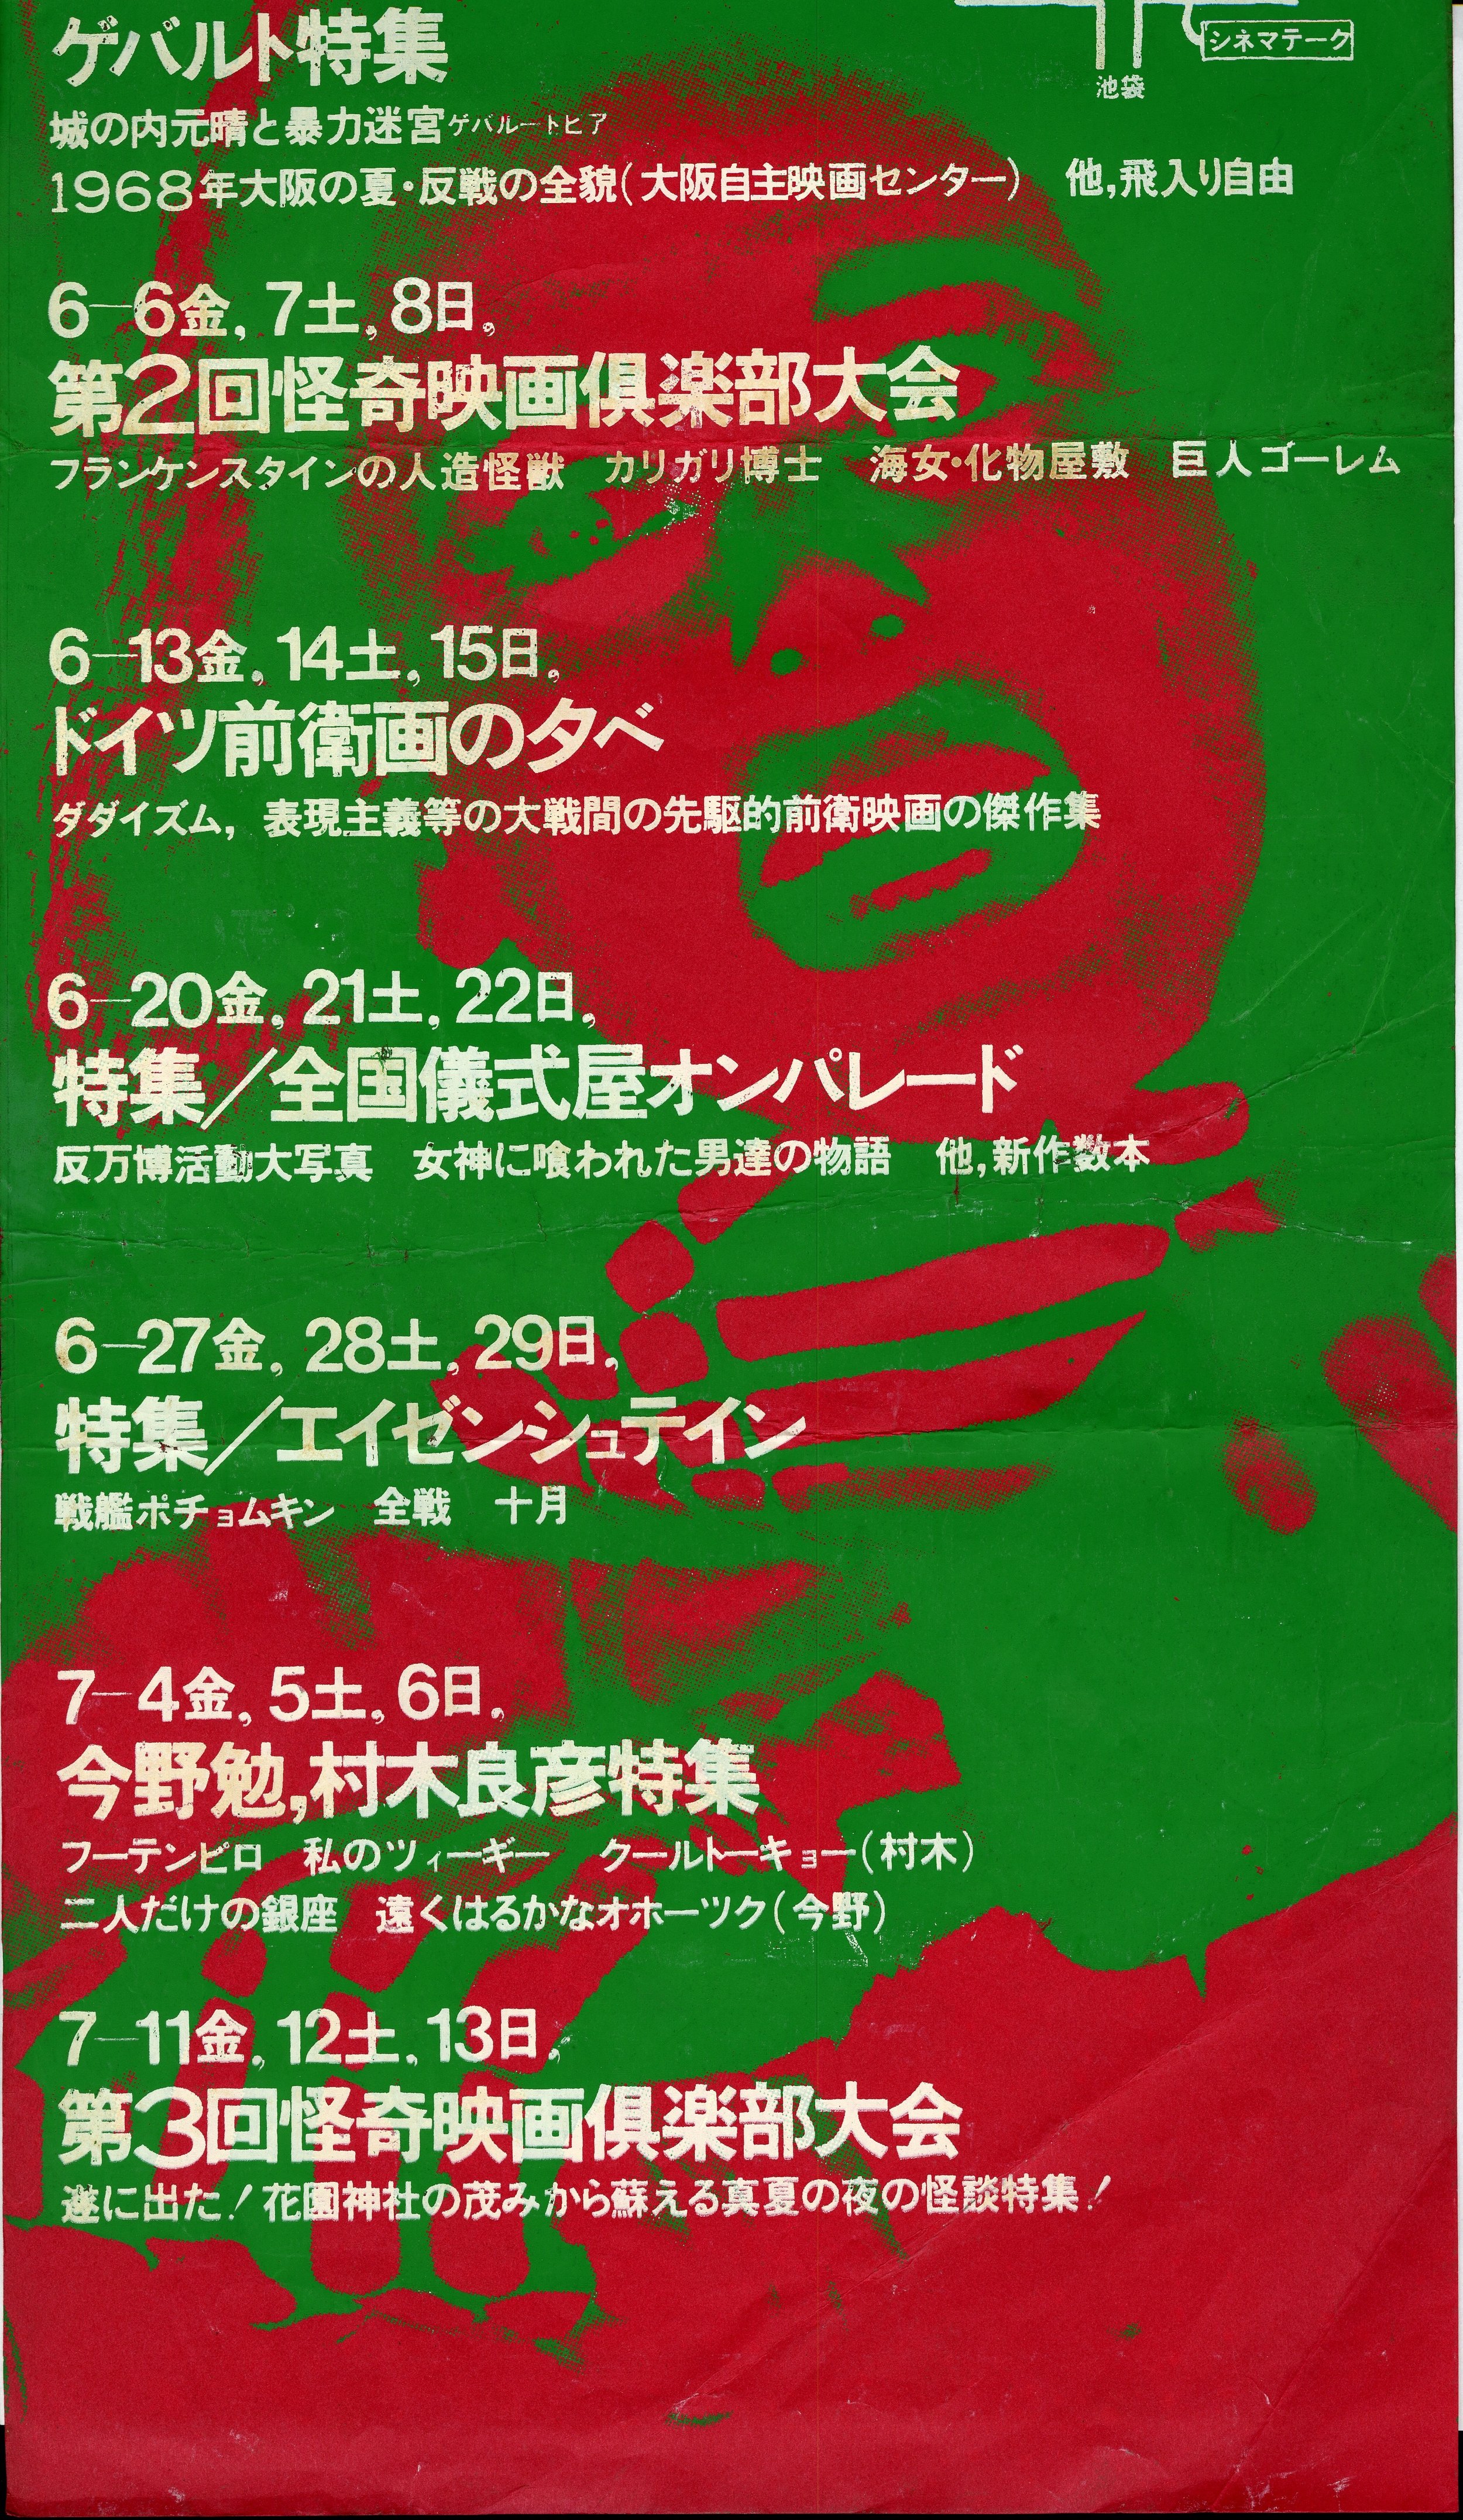 Copy of シネマテークポスター